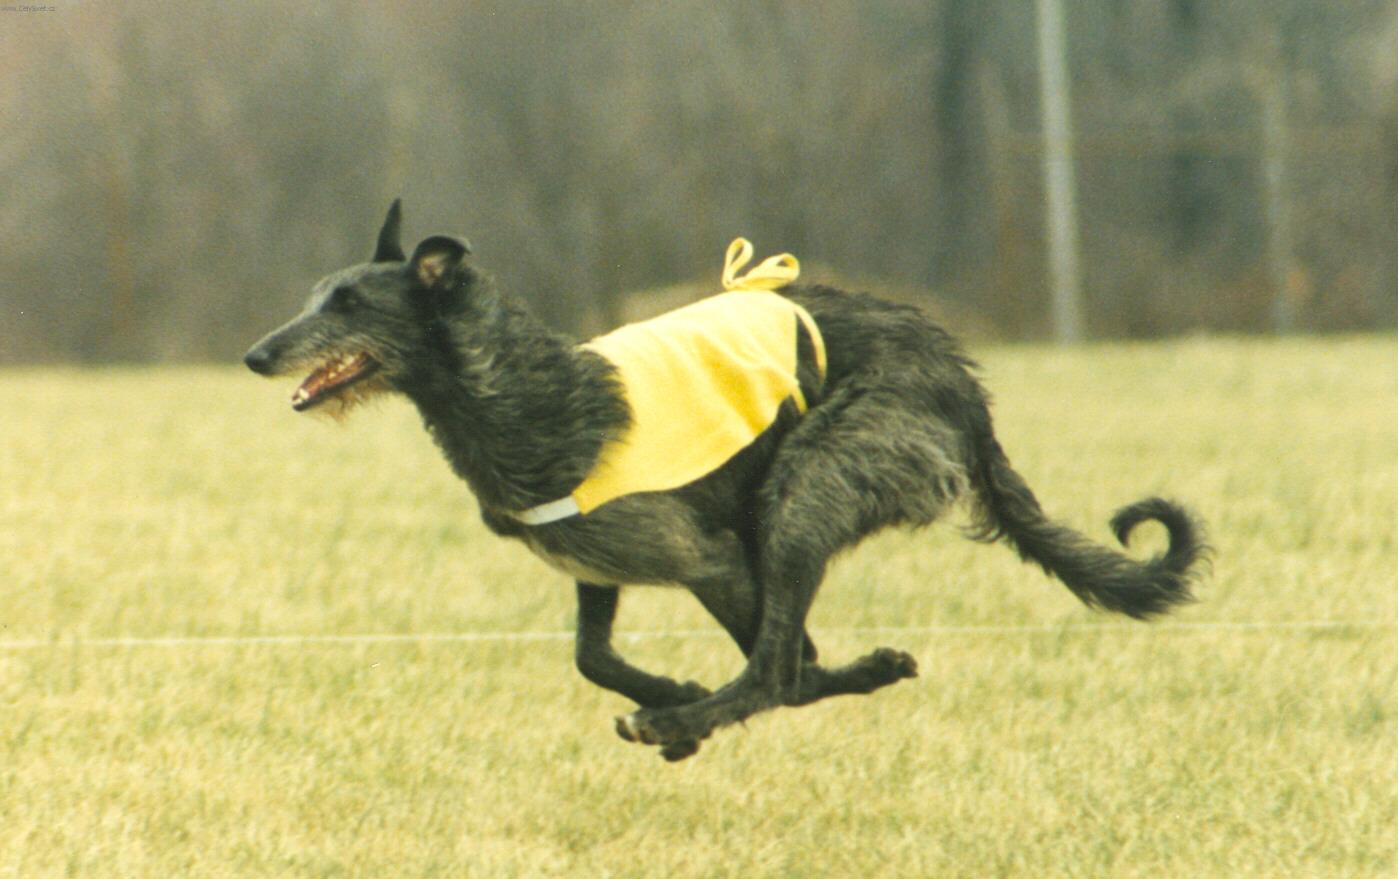 Foto: Dirhound în timp ce alerga